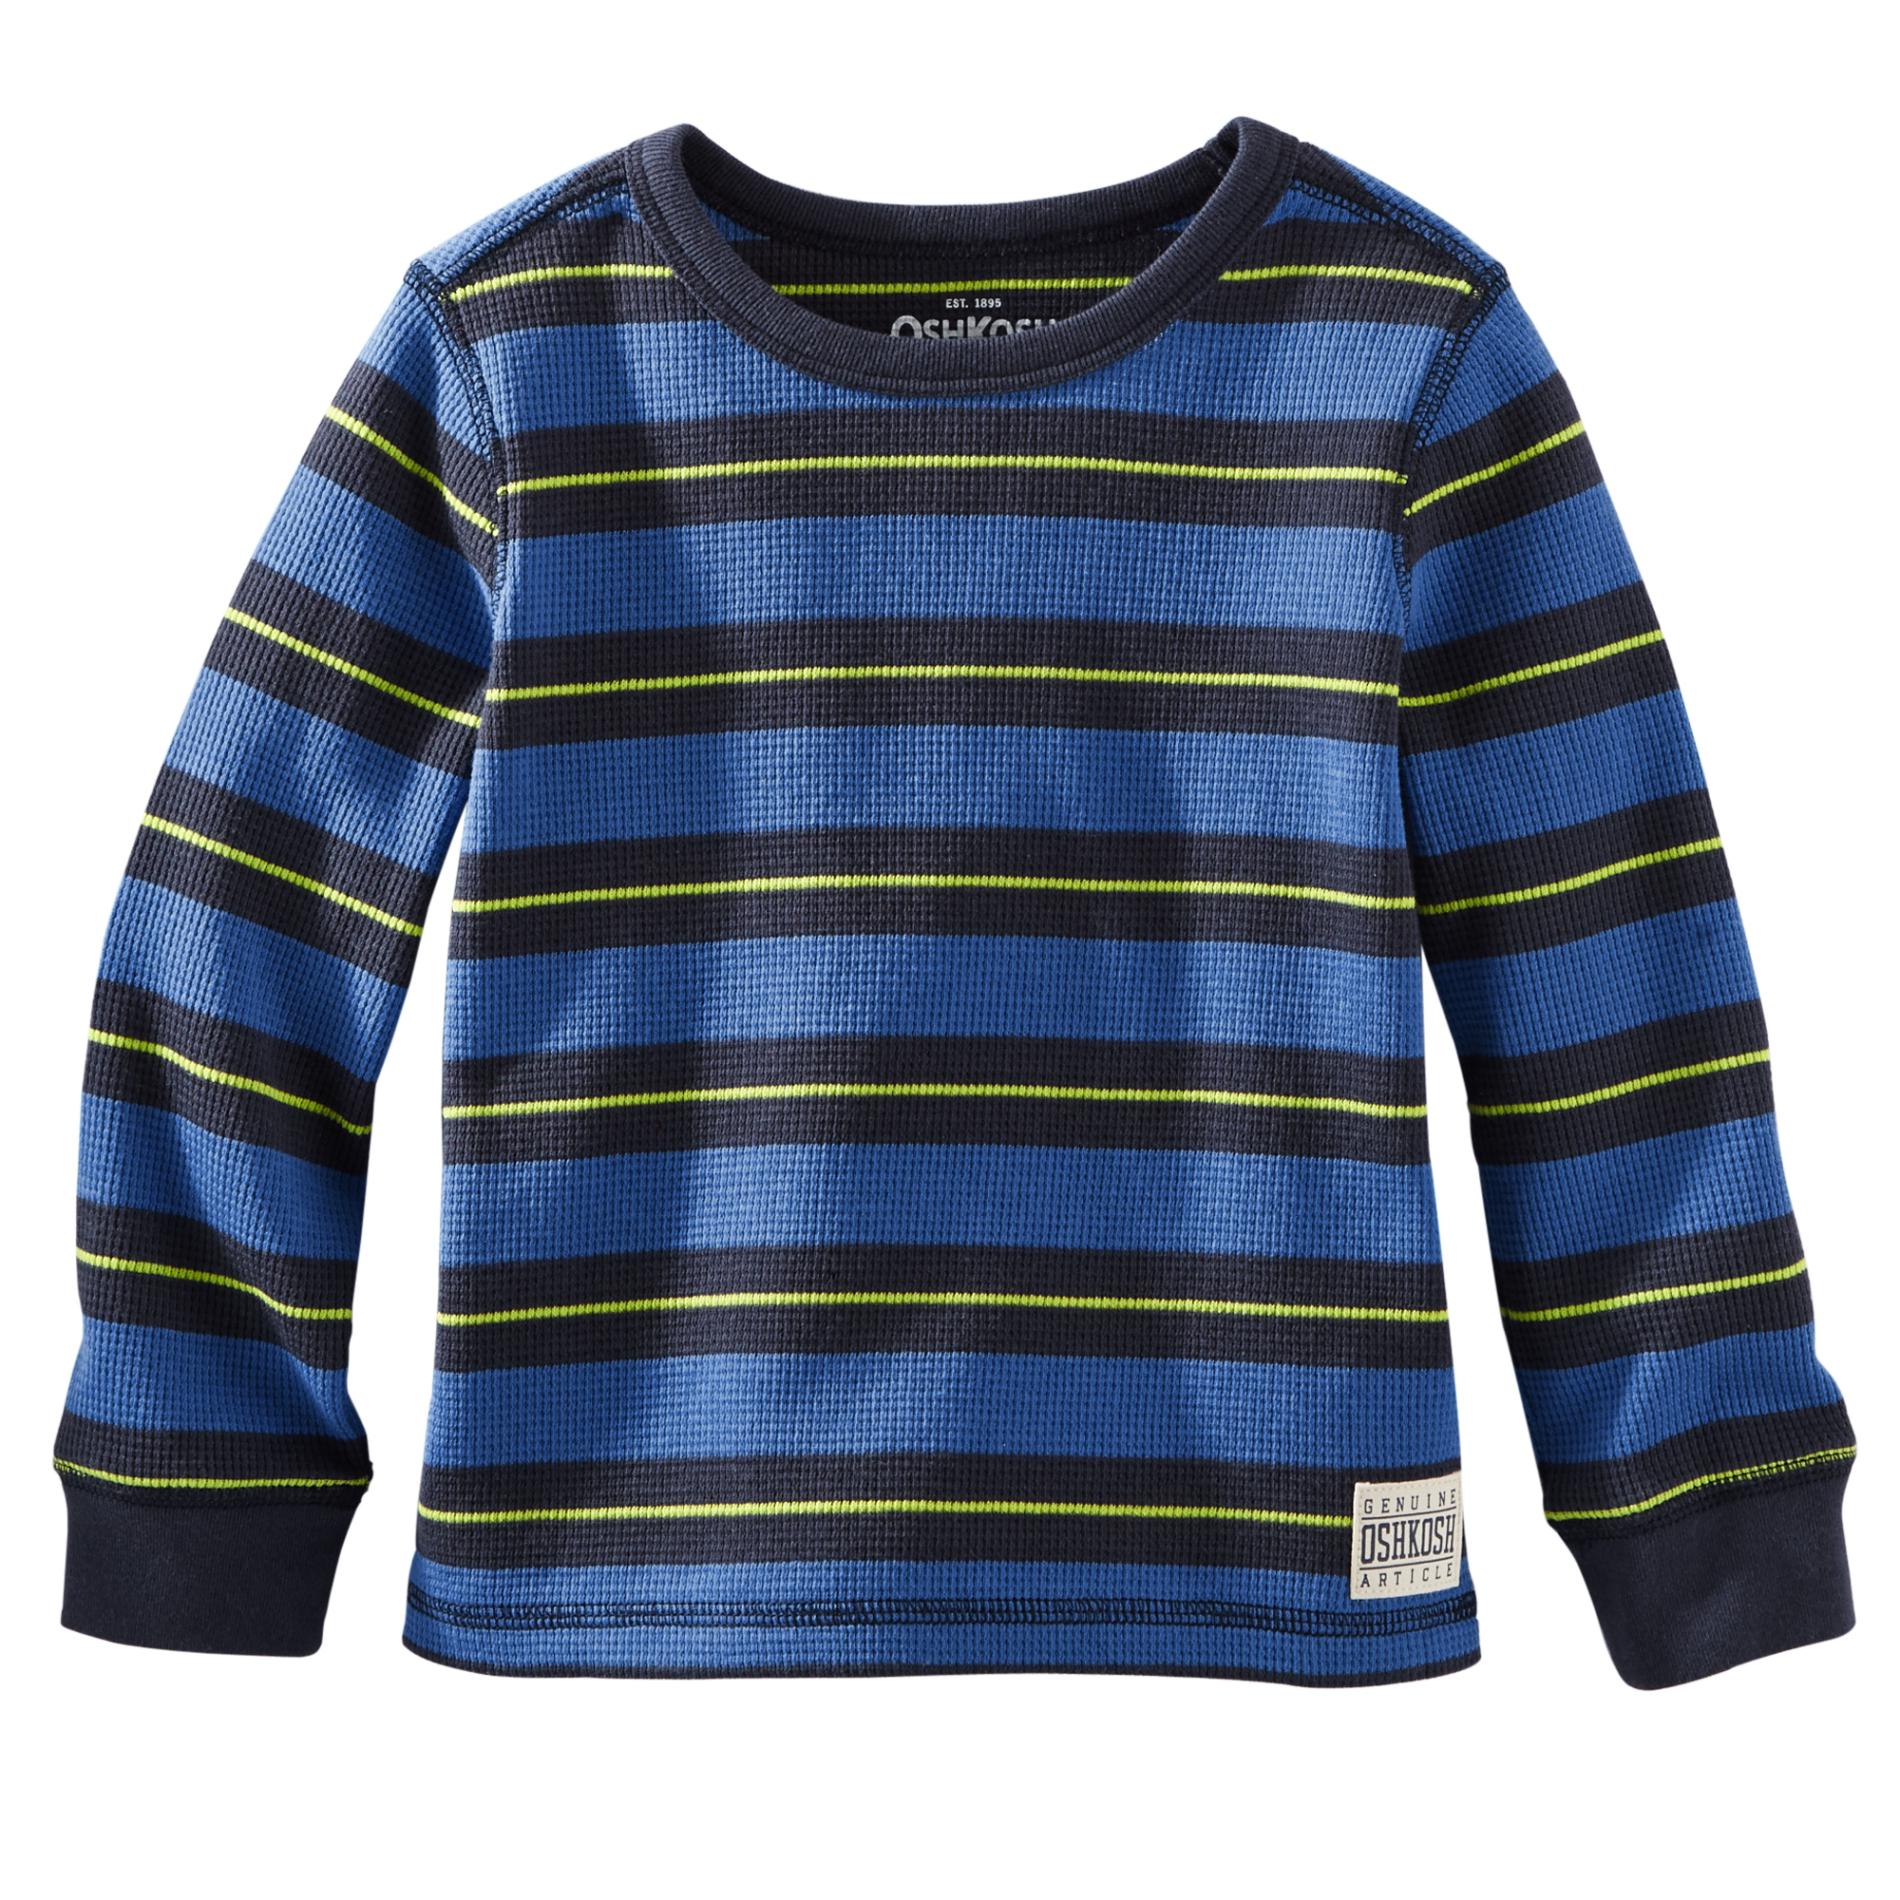 OshKosh Toddler Boy's Thermal Shirt - Striped